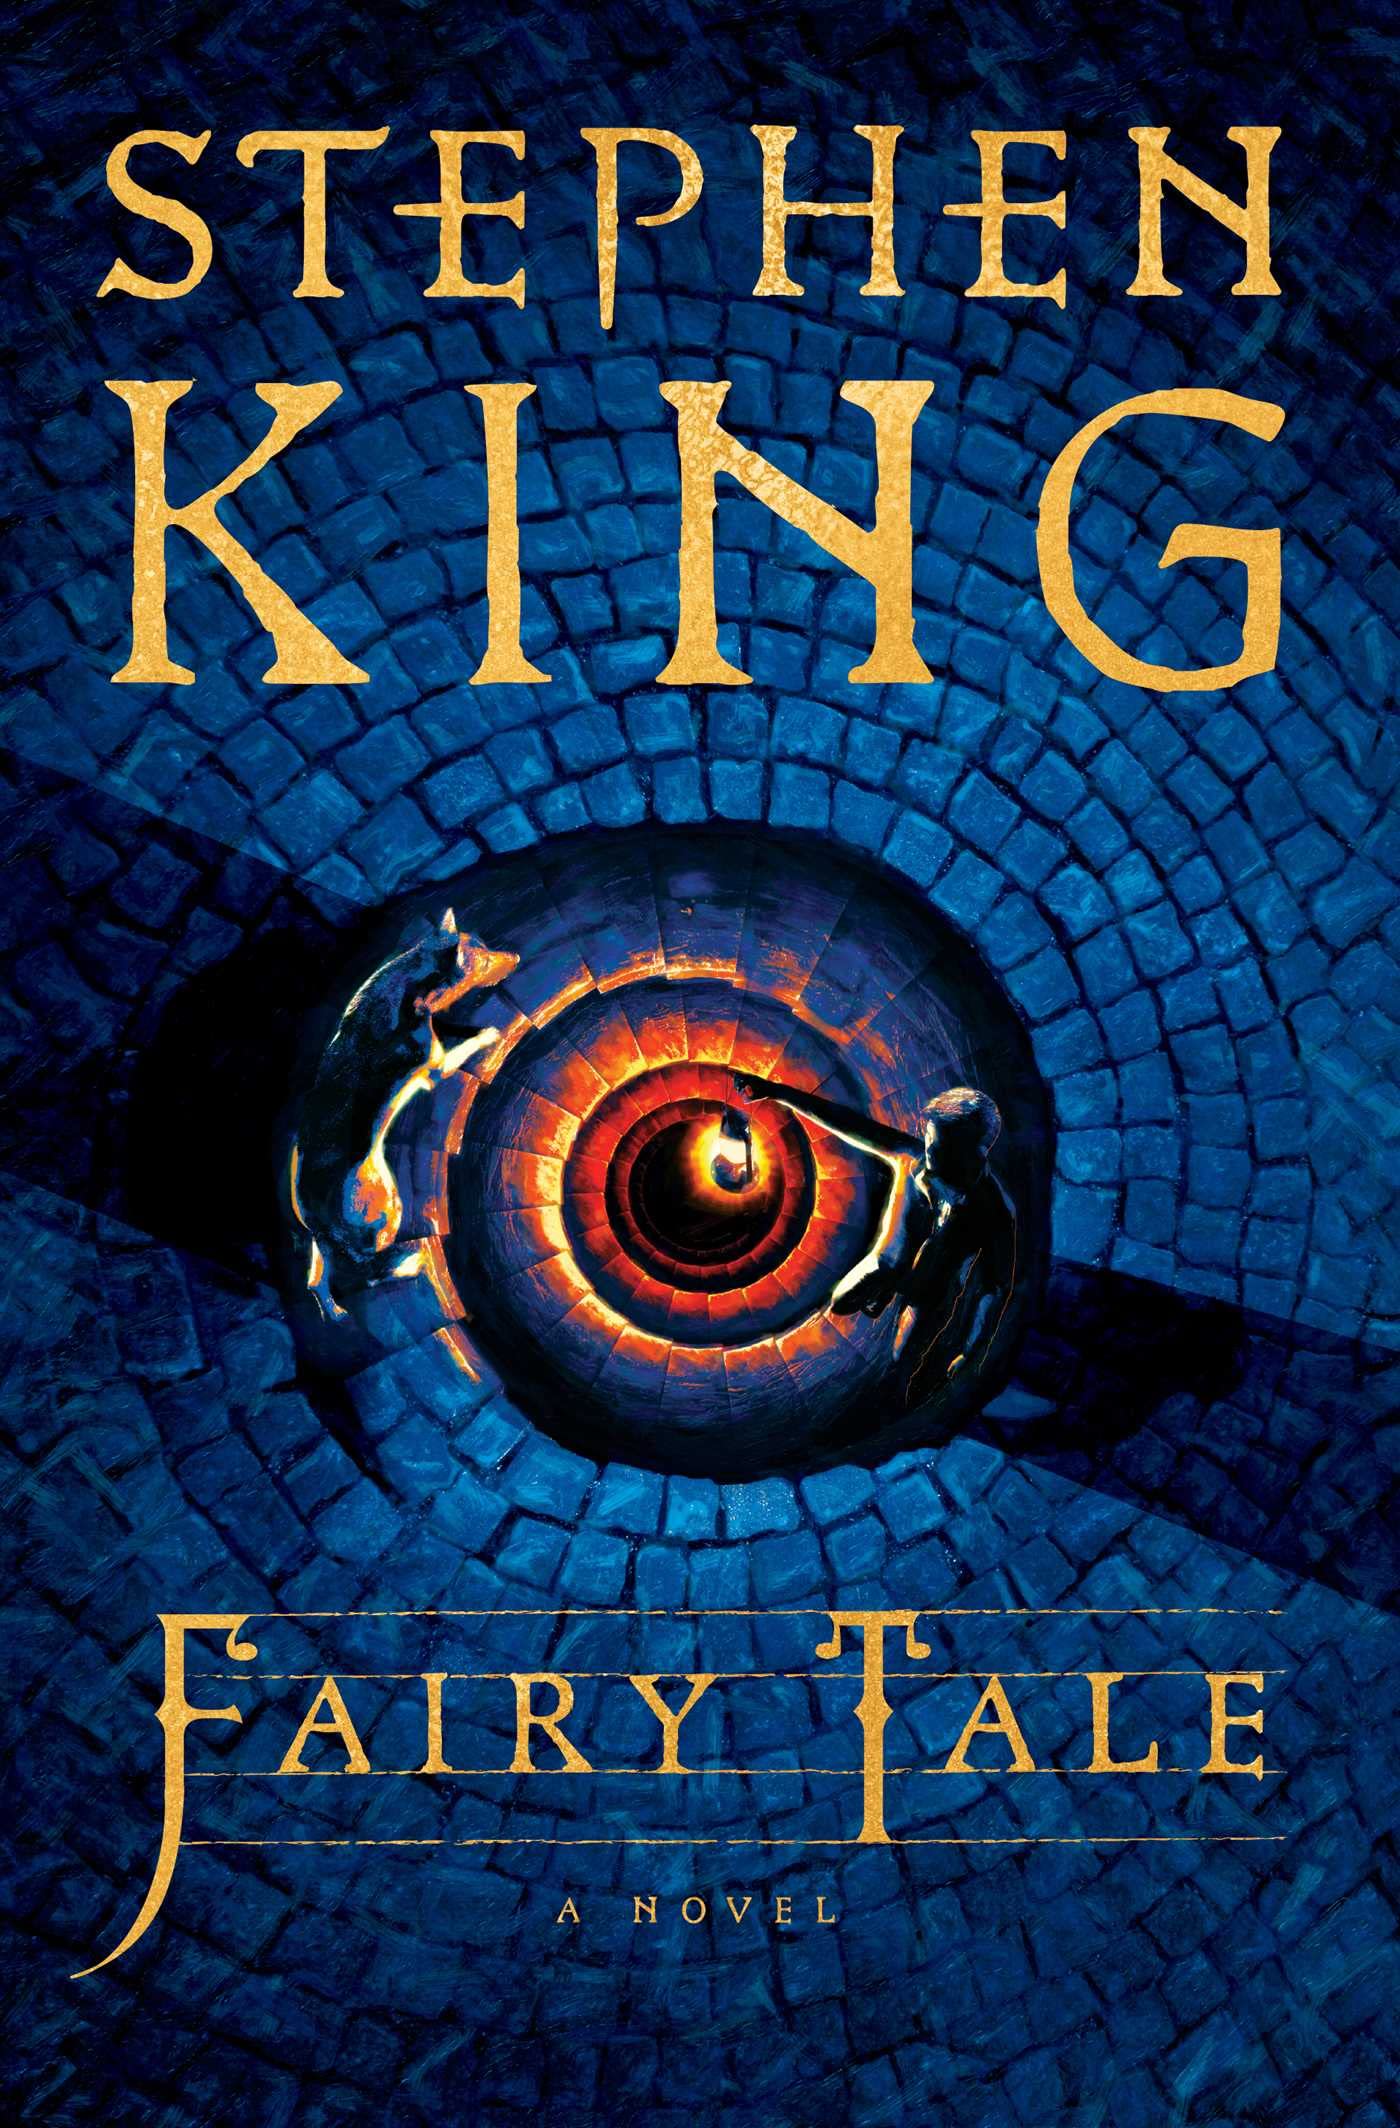 DownloadStephan kings' fairy tale book font